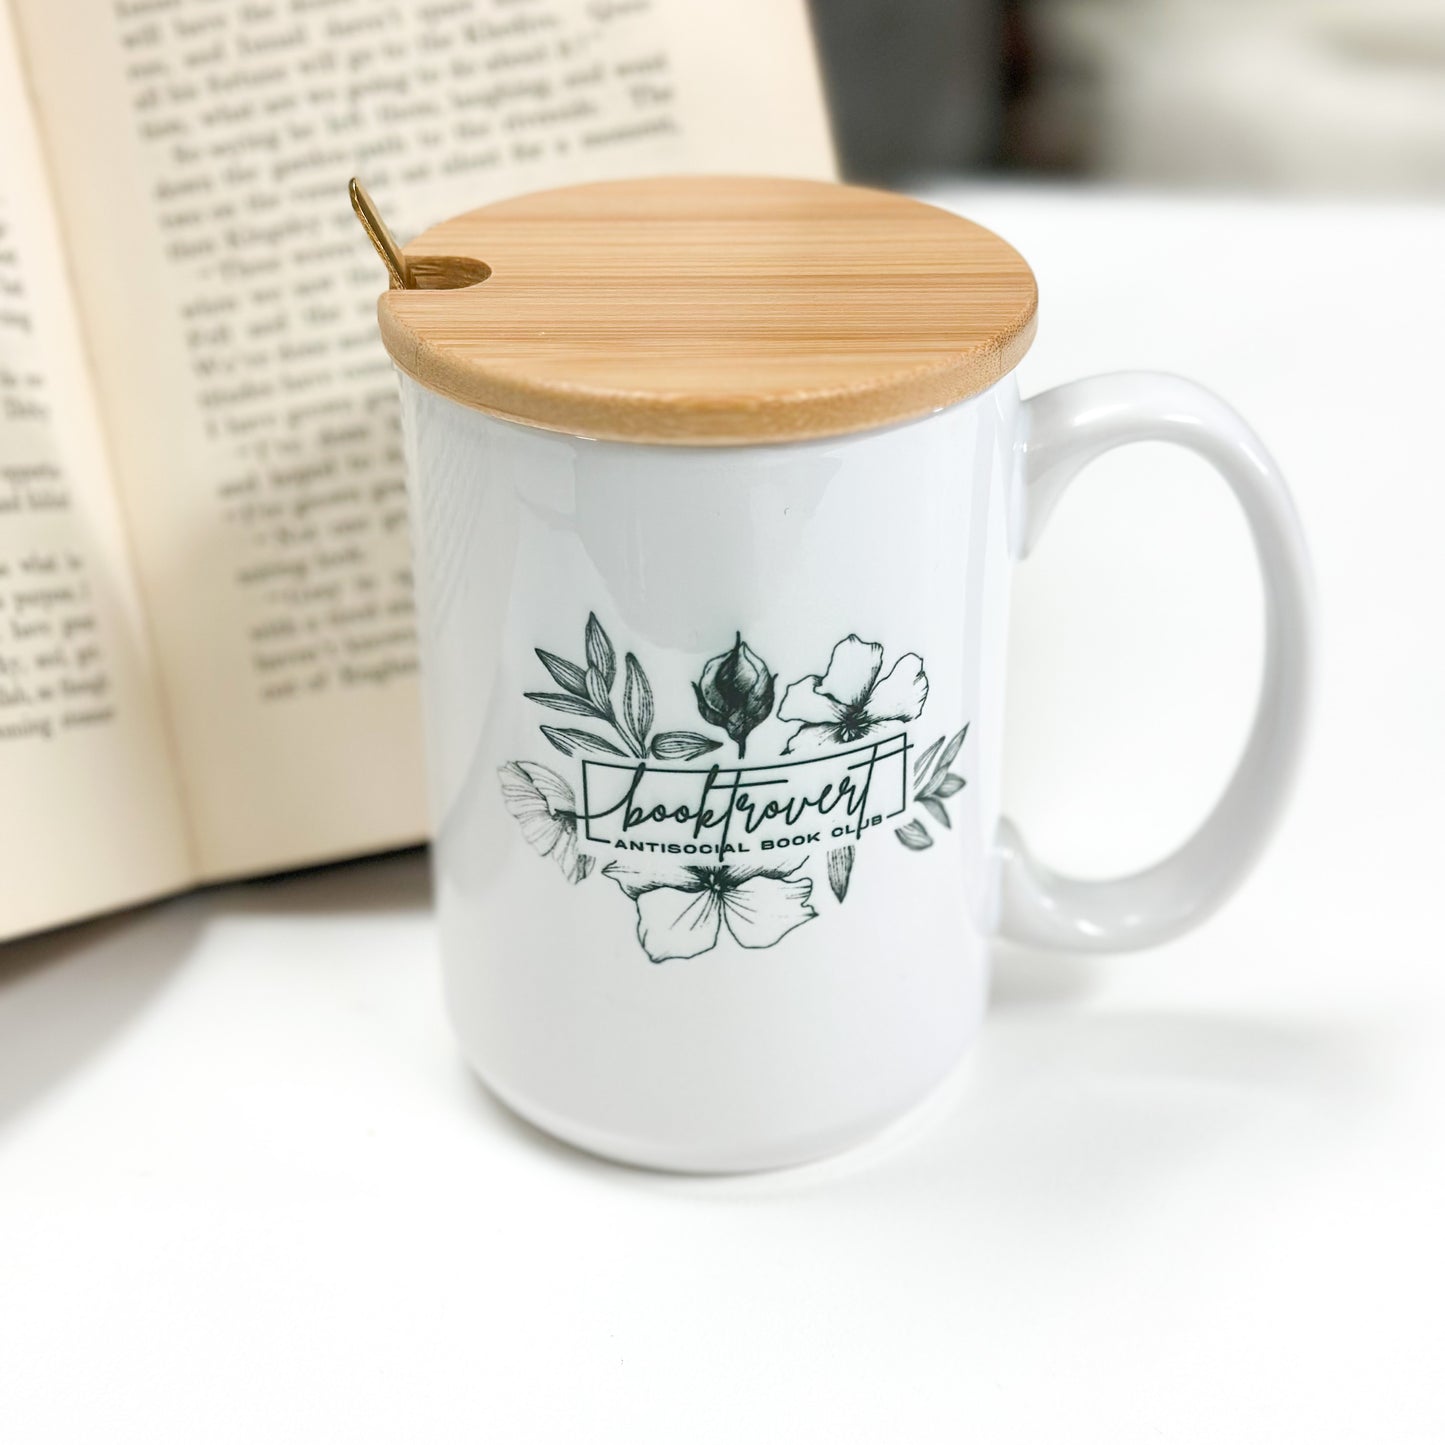 Booktrovert, Funny Mug, Coffee Mug Book Lover Gift